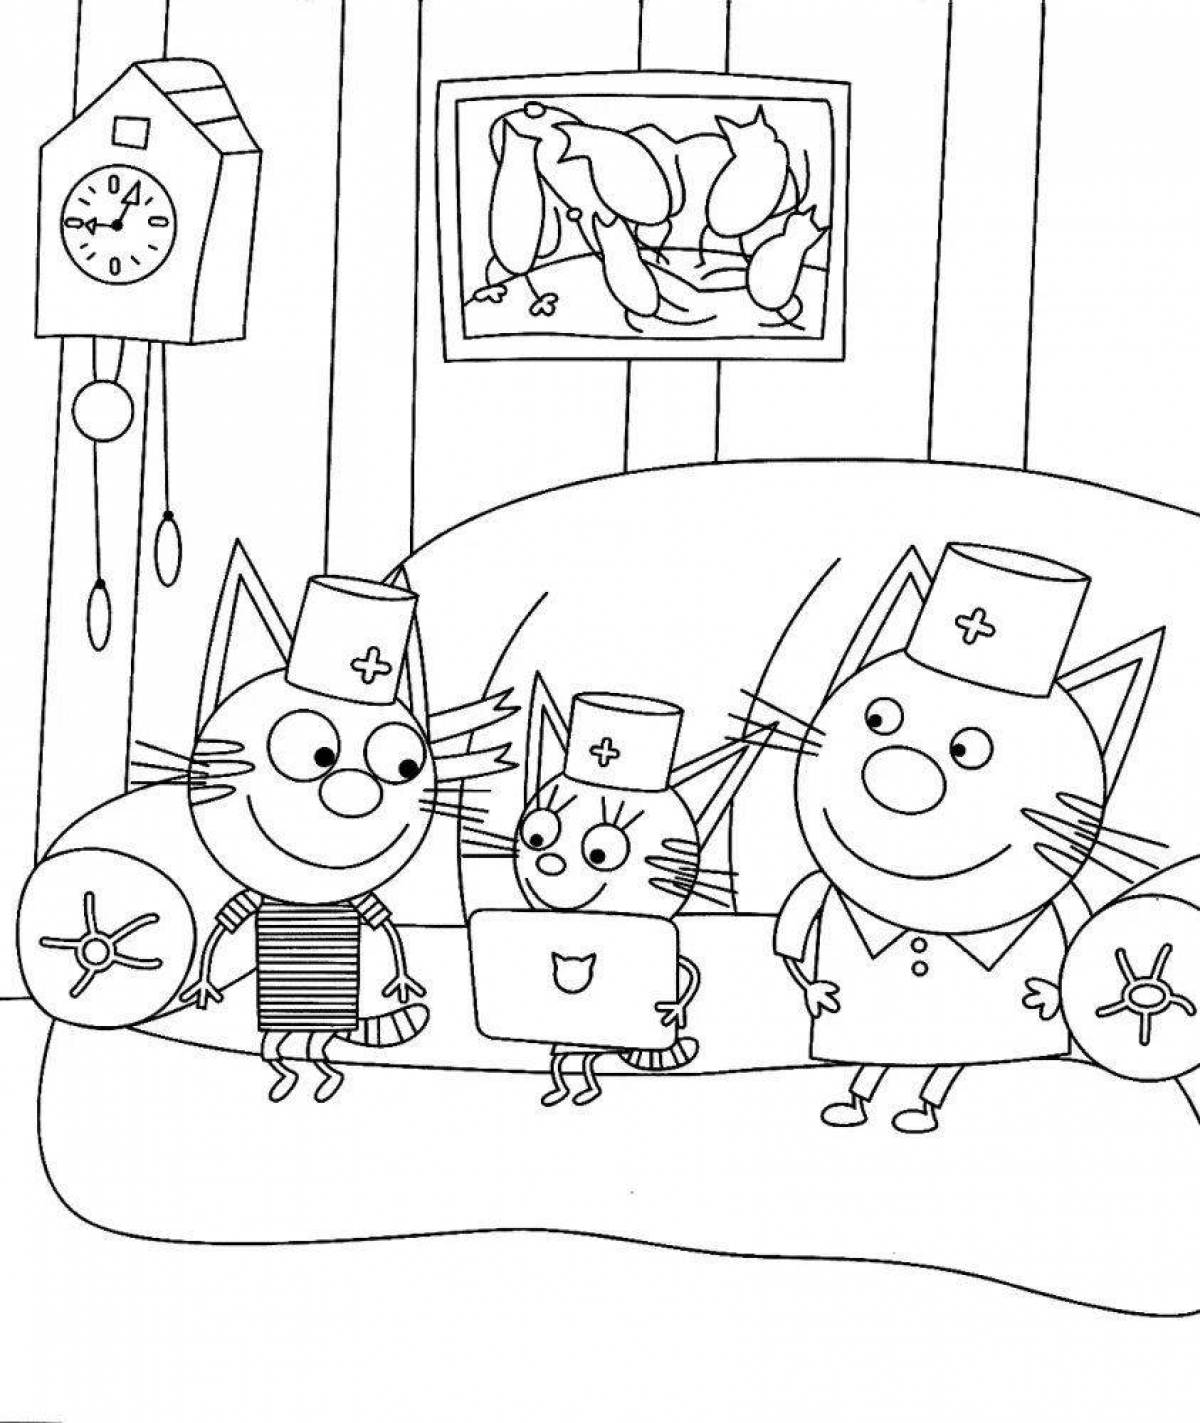 Фото Привлечение рисования трех кошек